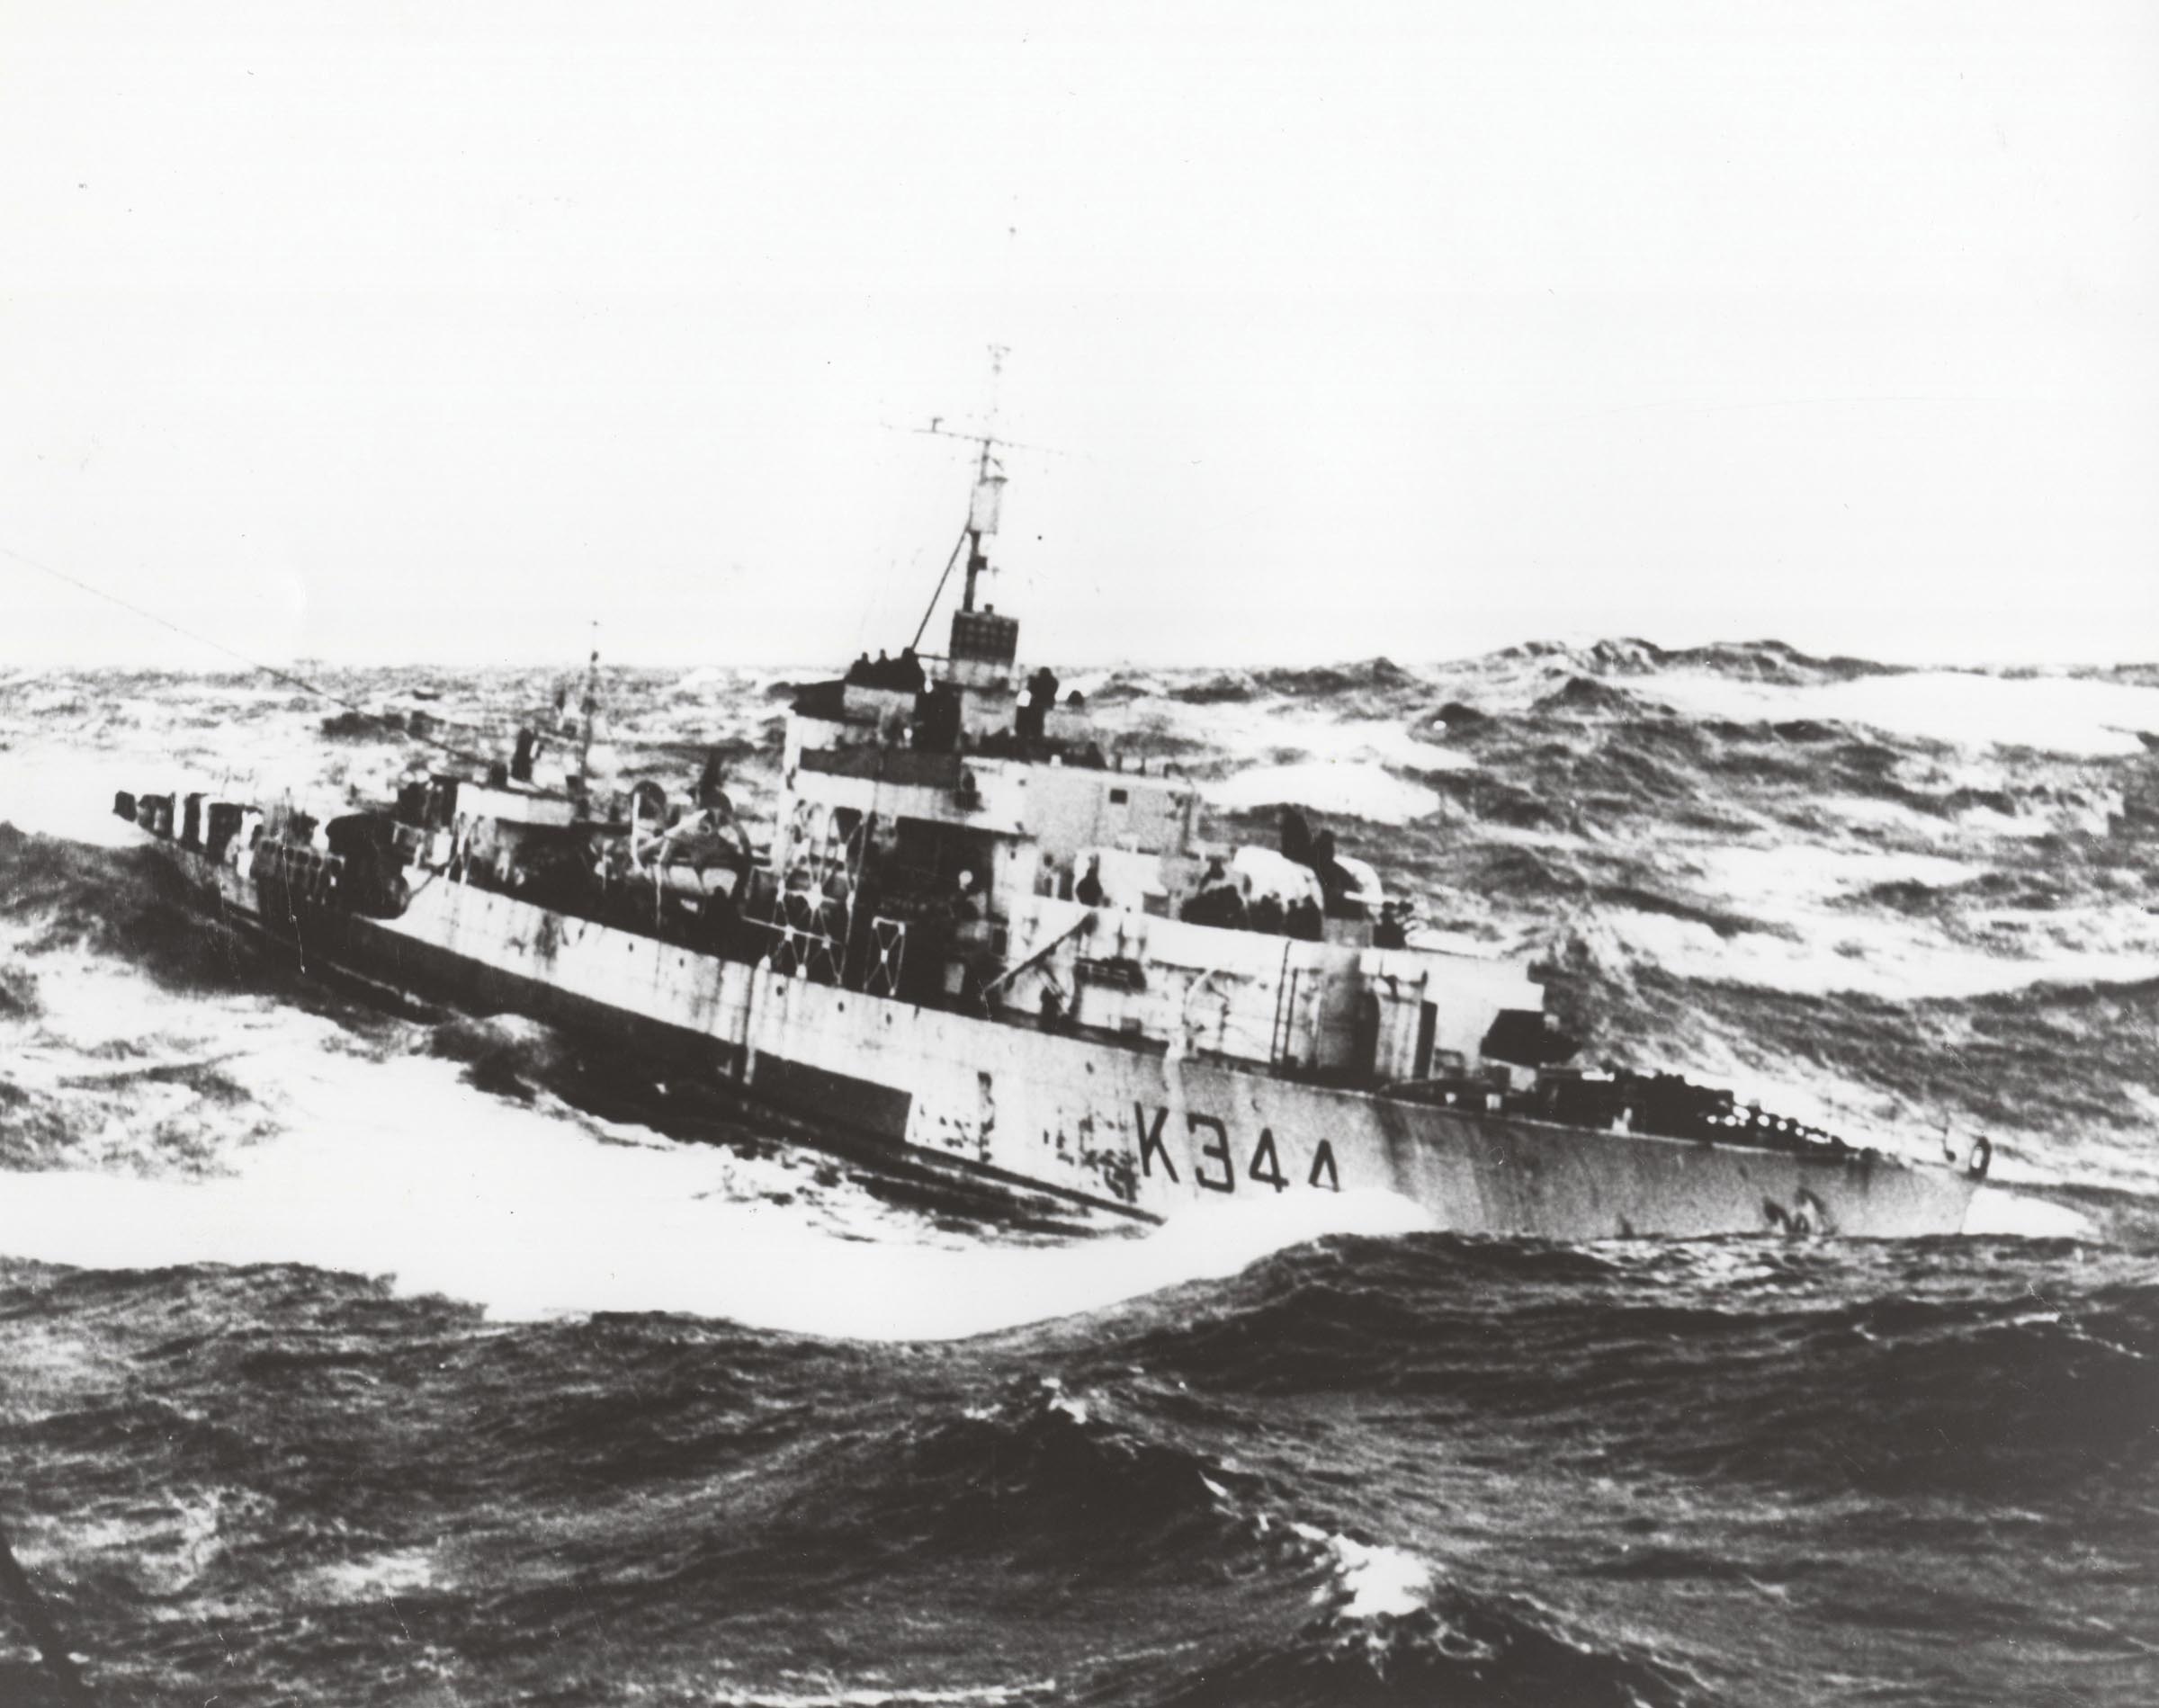 HMCS SEA CLIFF